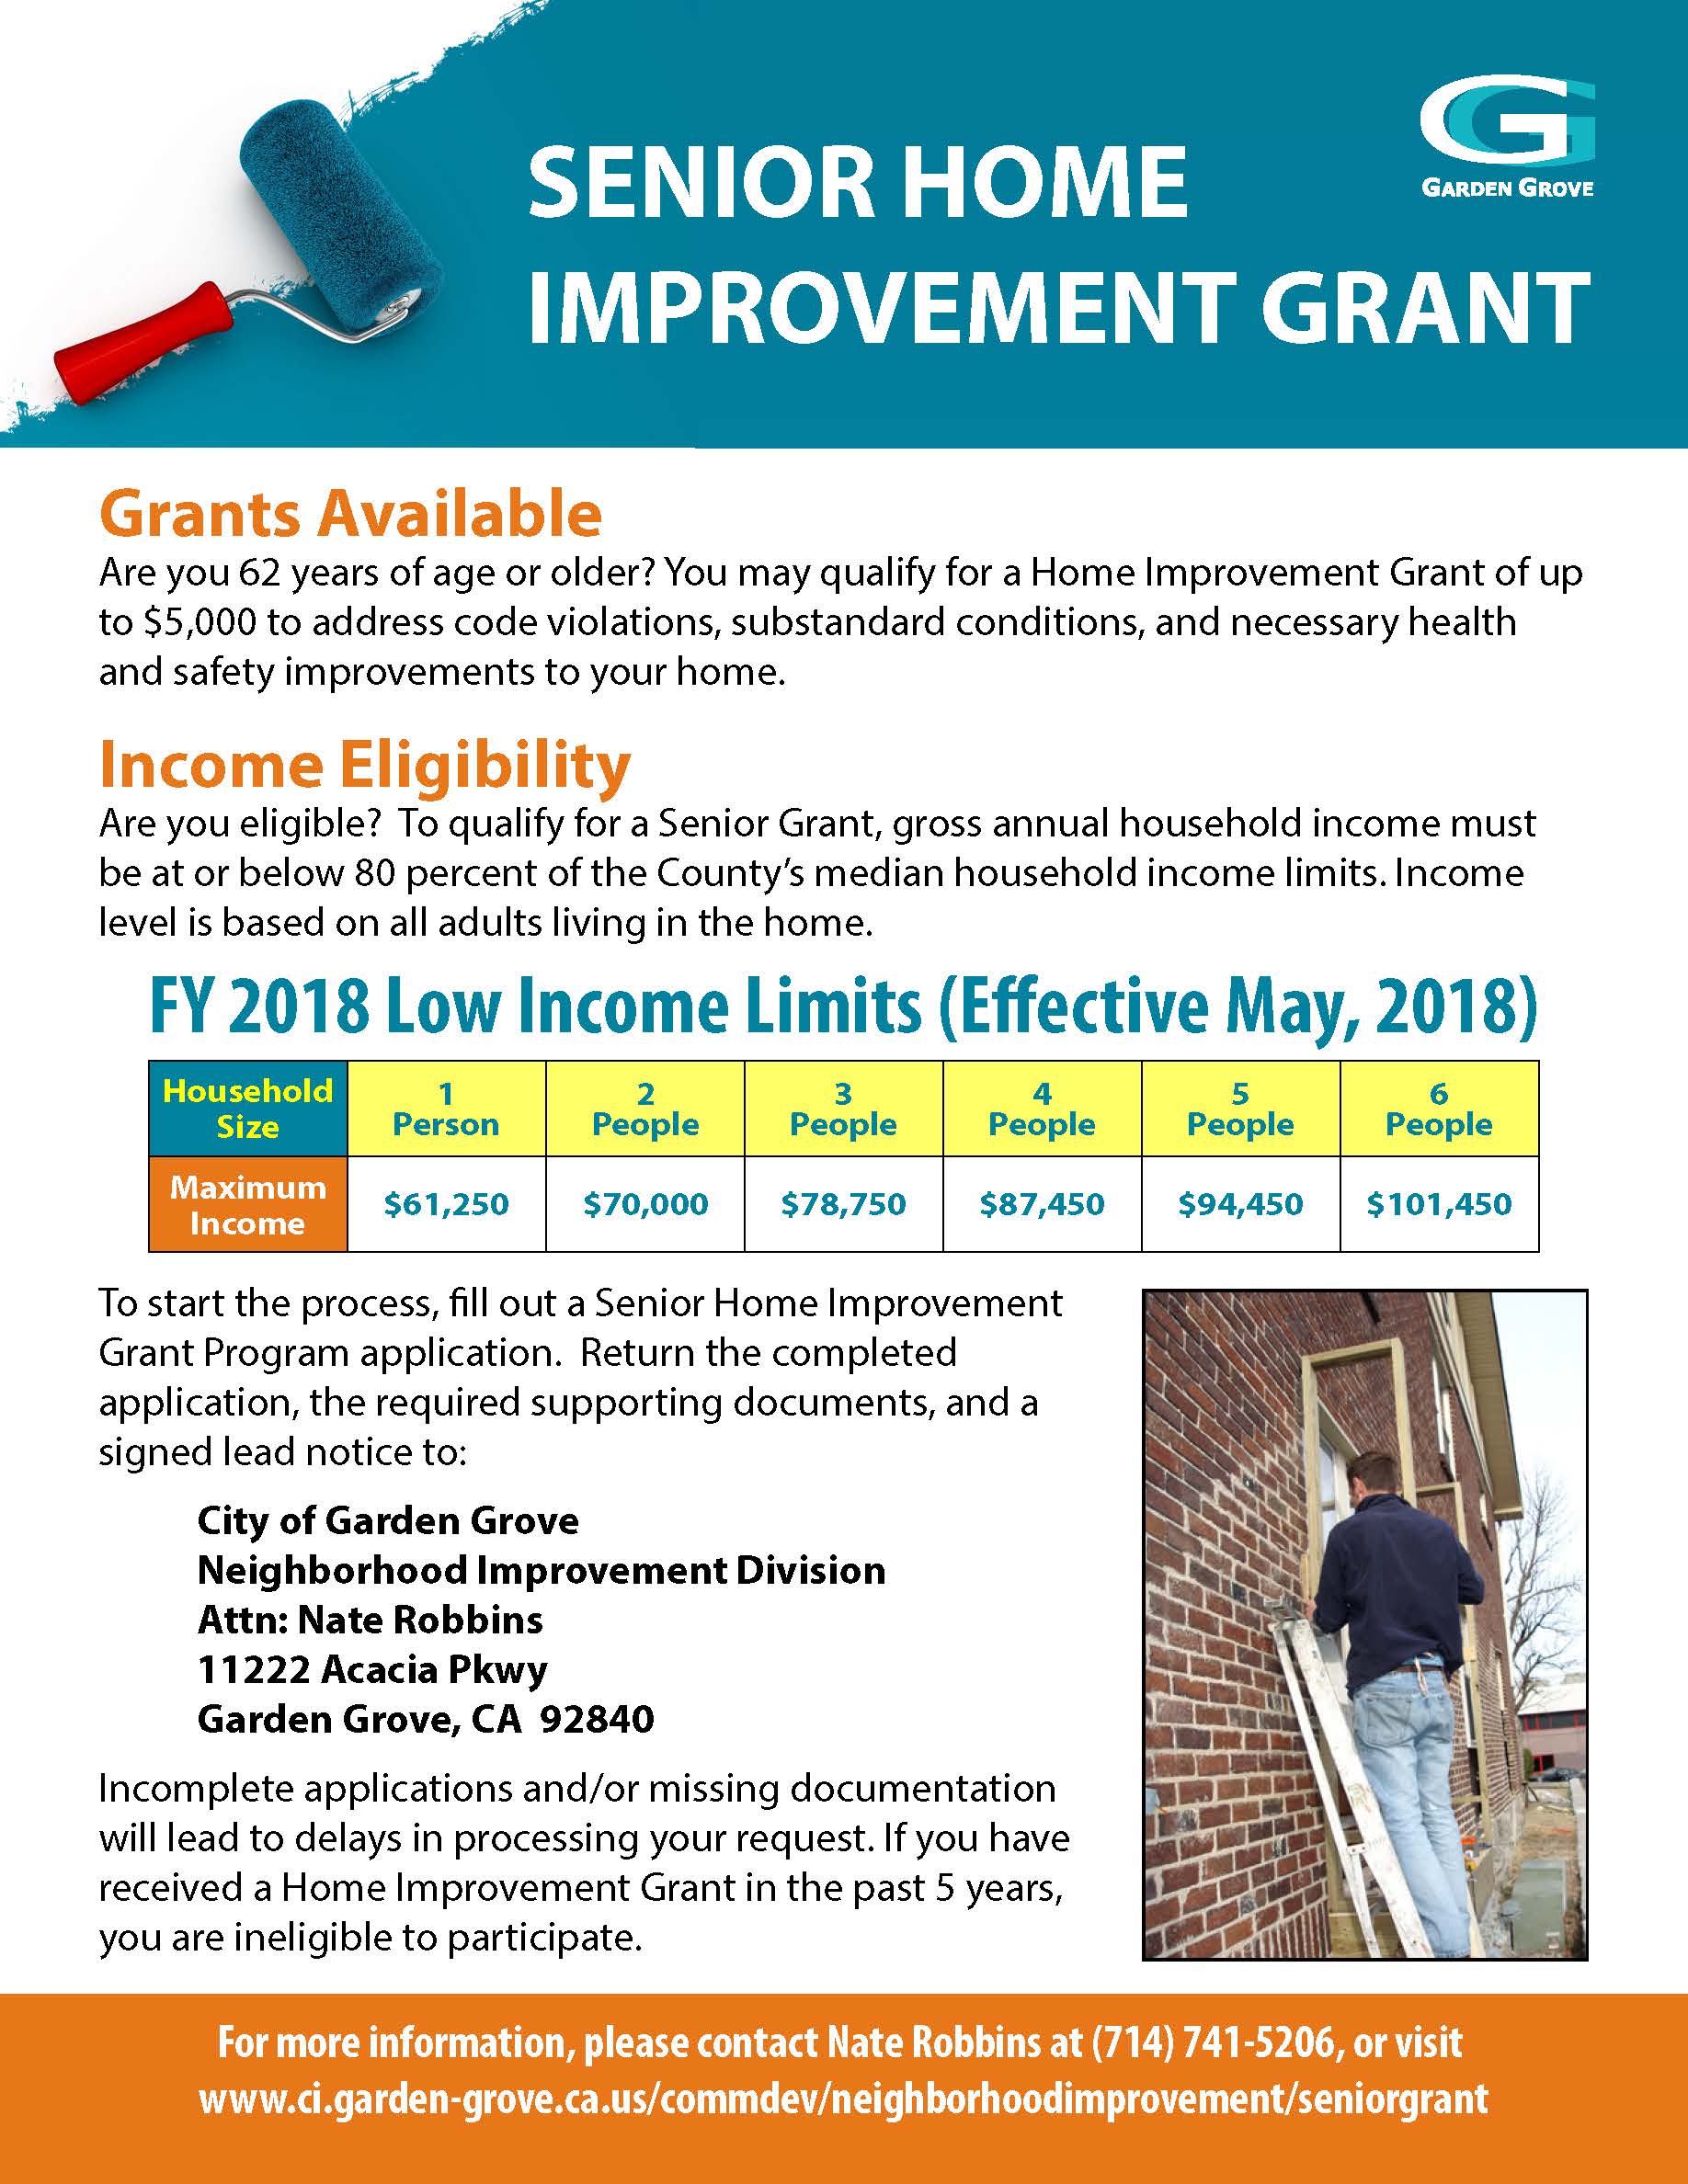 Grants Available for Senior Home Improvement Program City of Garden Grove